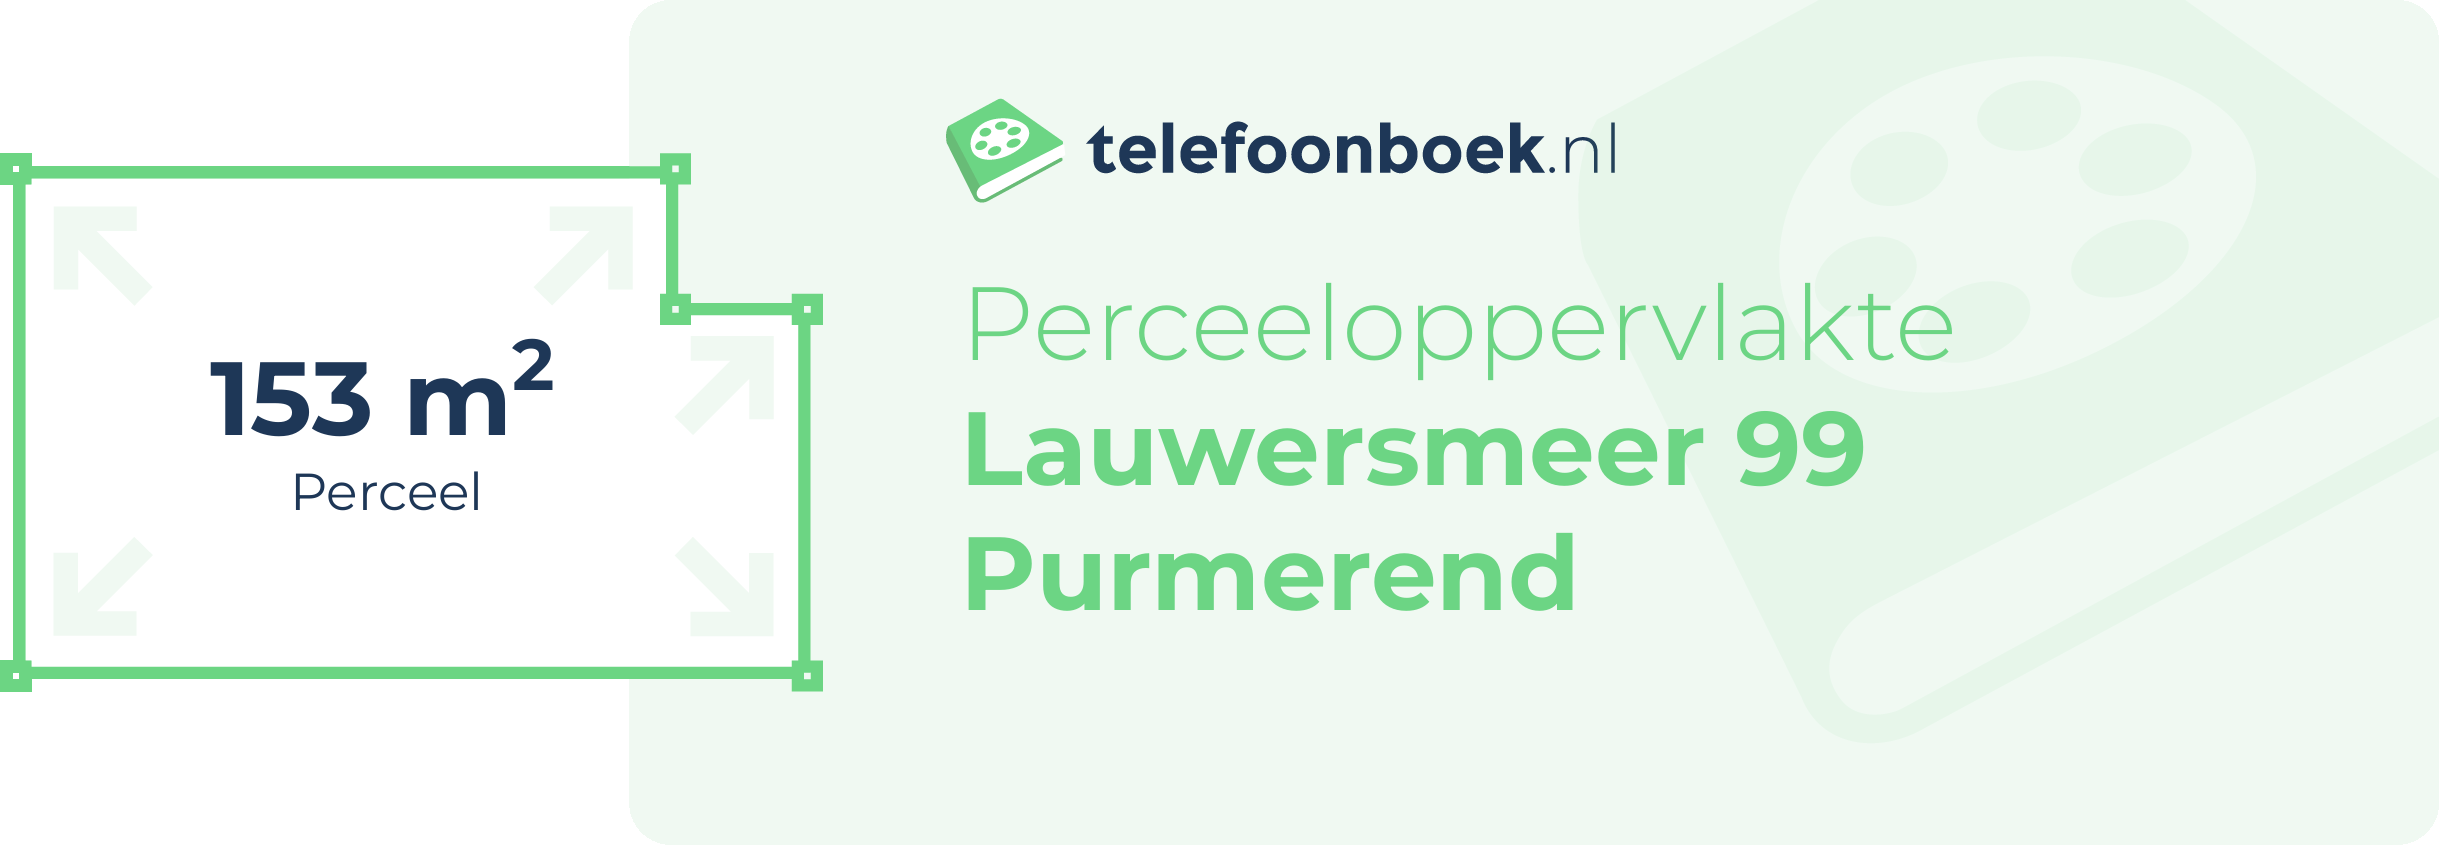 Perceeloppervlakte Lauwersmeer 99 Purmerend